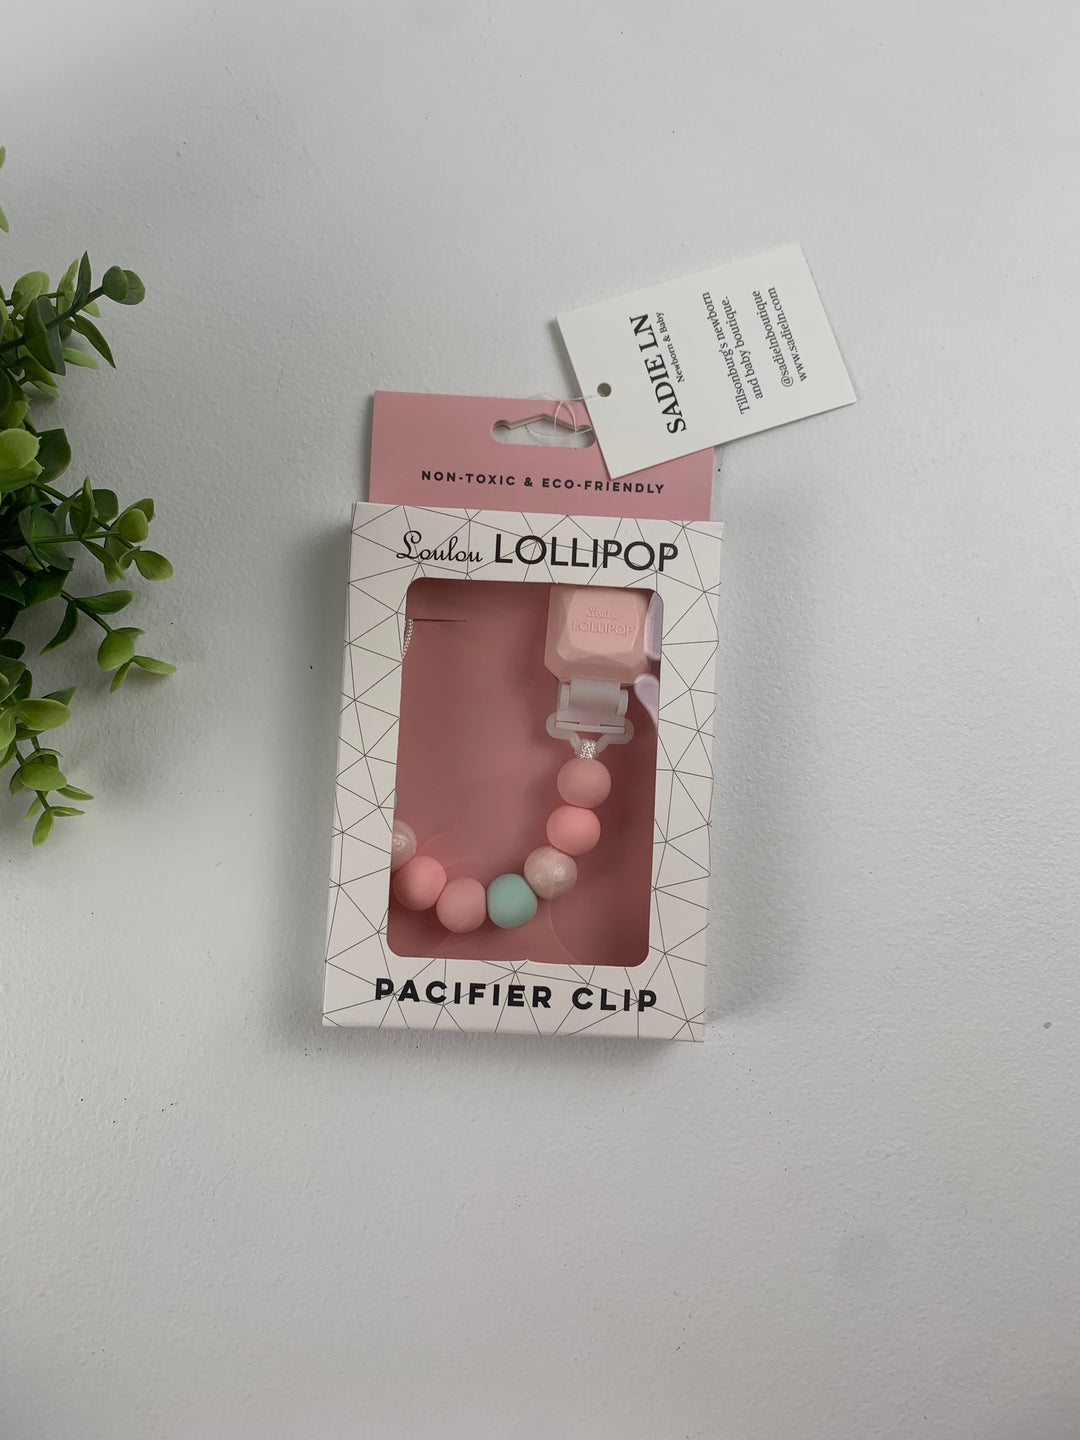 LouLou Lollipop Pacifier Clips